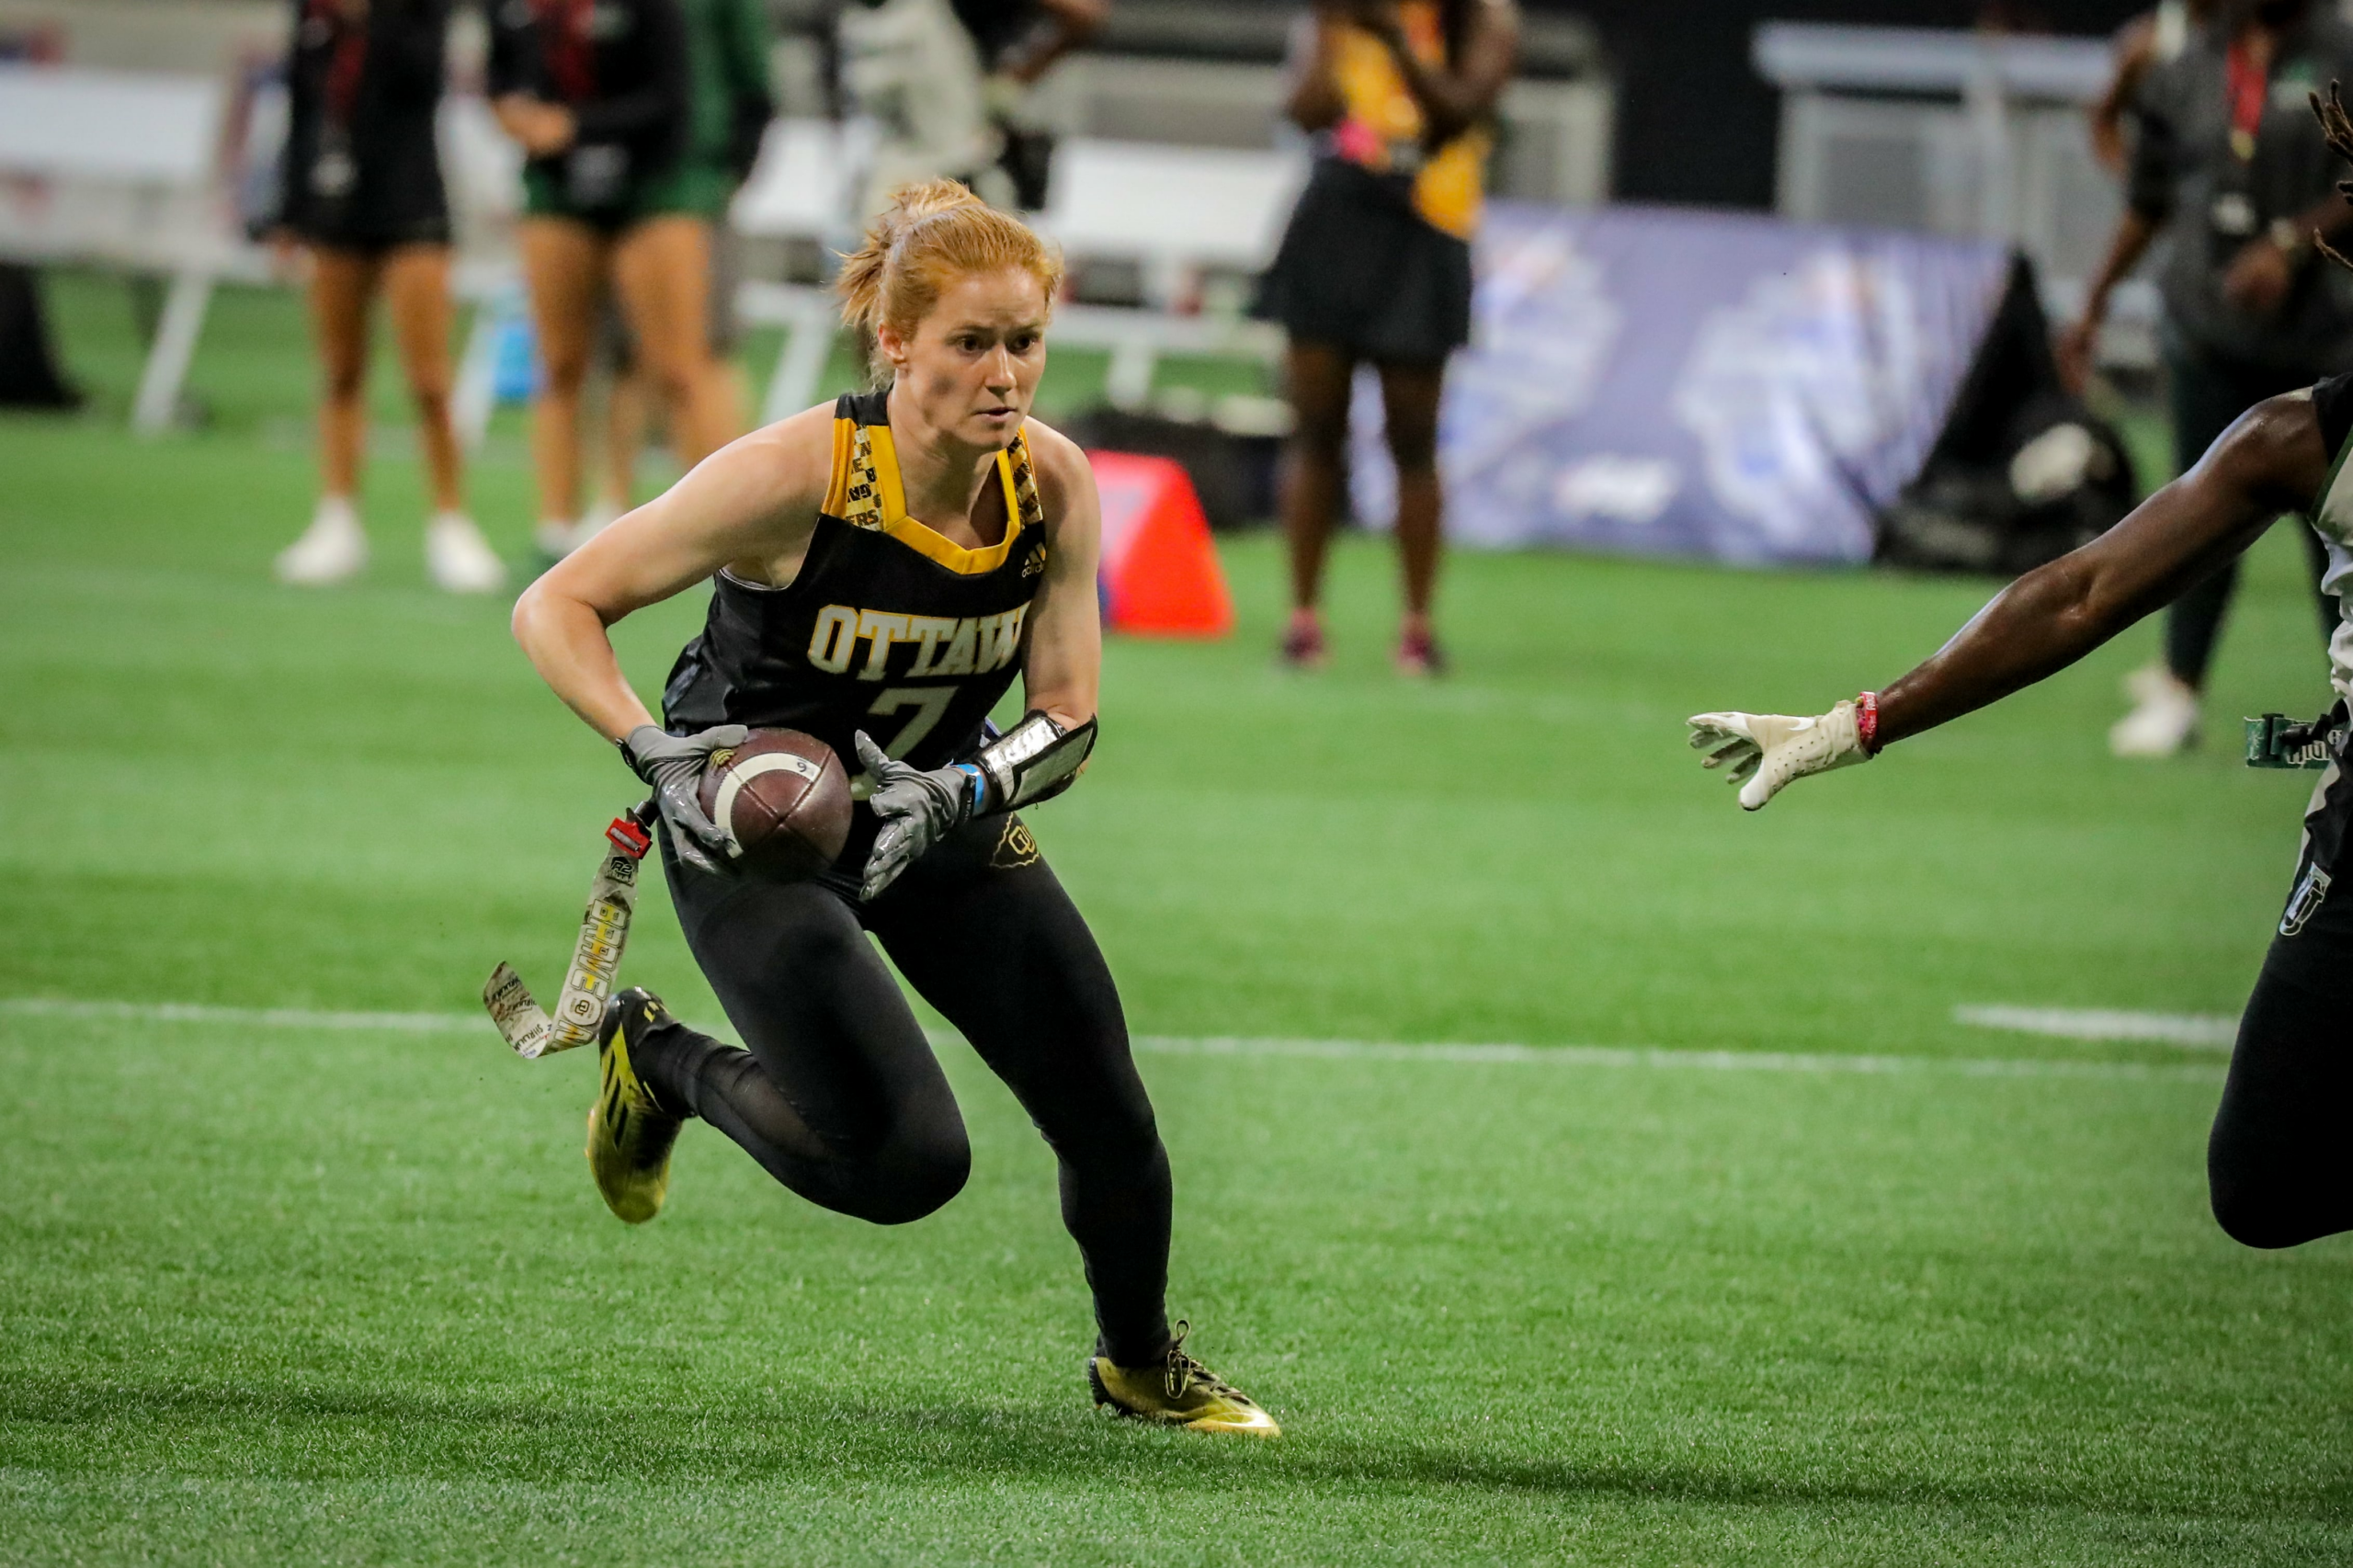 U.S. Women's National Team member Addison Orsborn in action for Ottawa University.